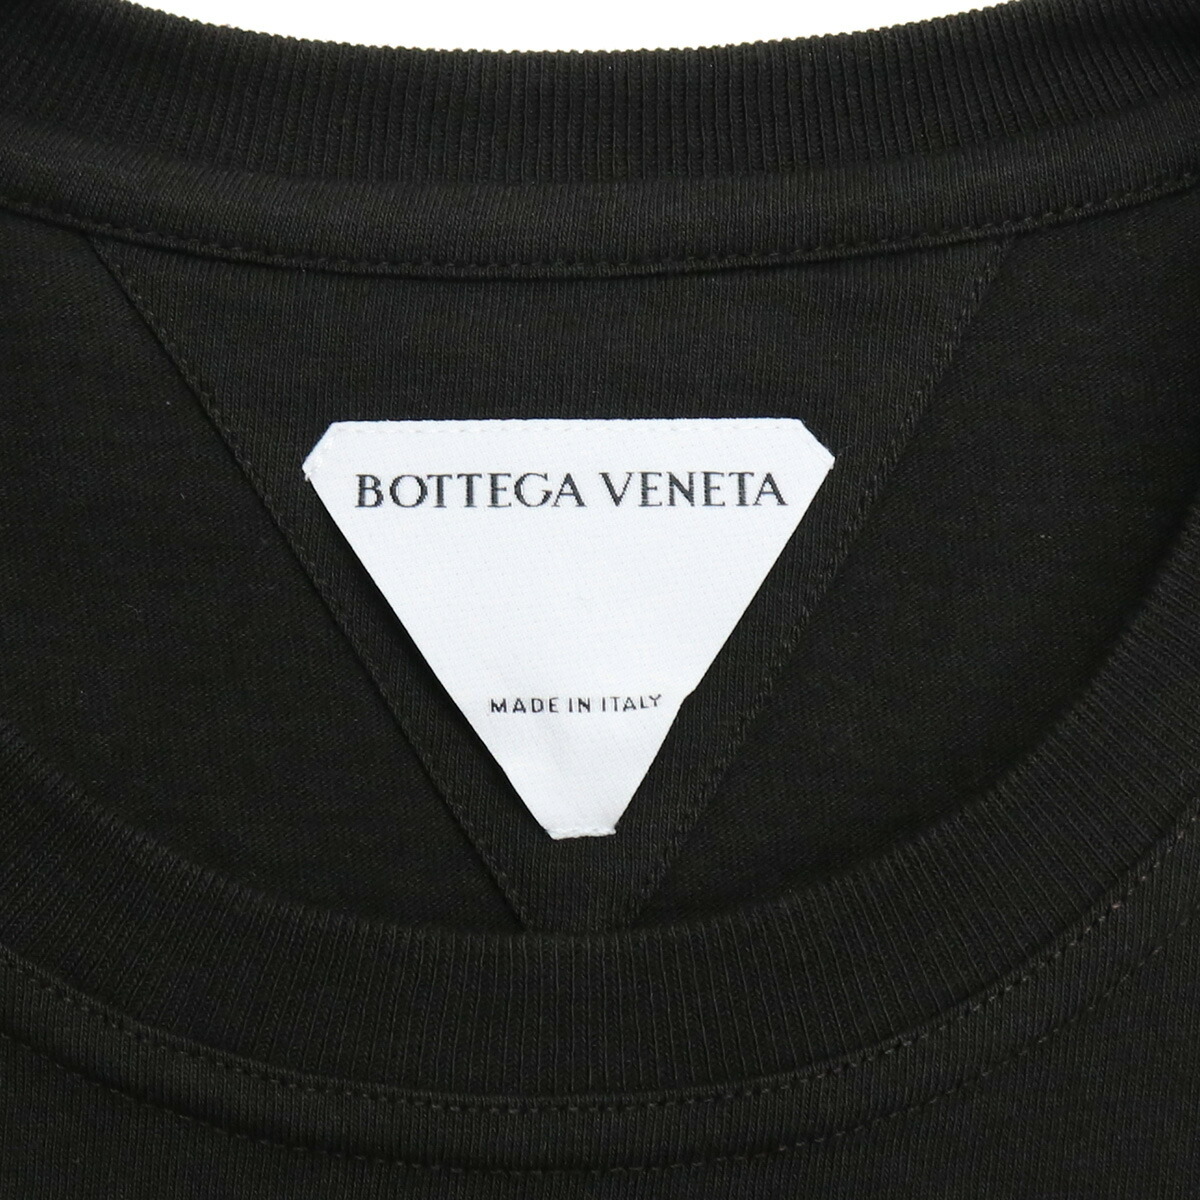 BOTTEGA VENETA ボッテガヴェネタ オーバーサイズ 半袖Tシャツ カーキ 649055 VF1U0